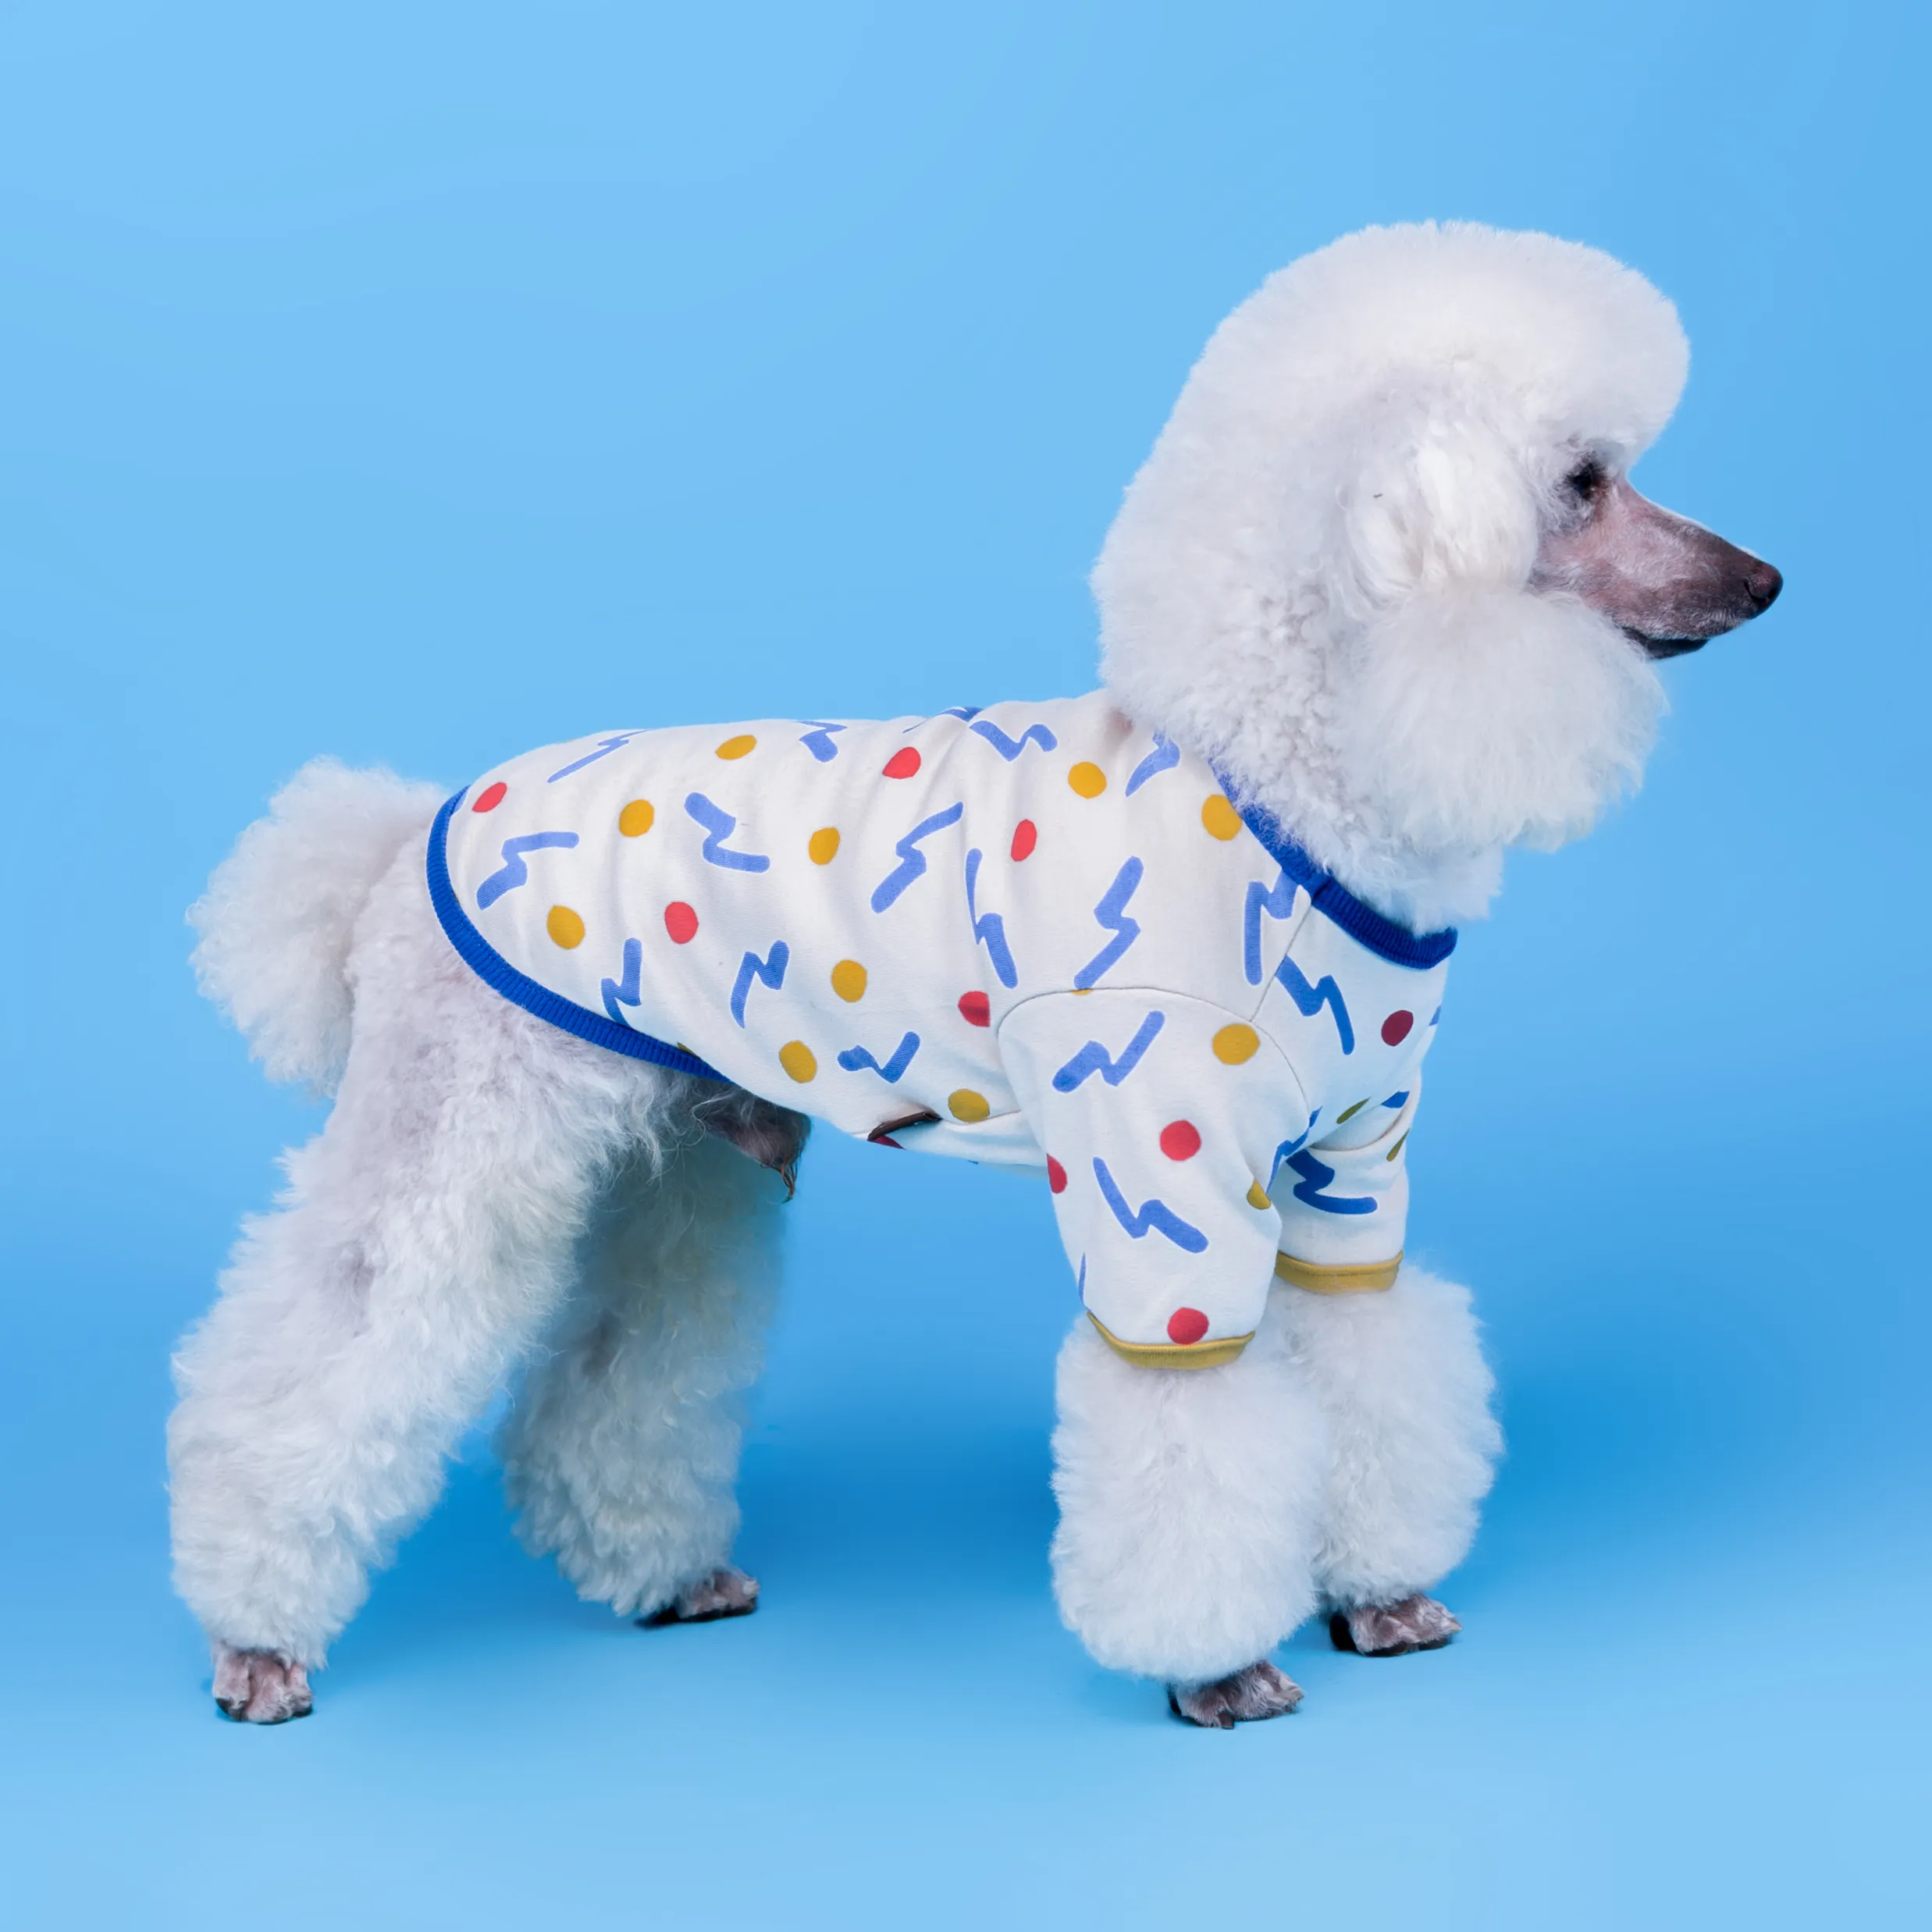 ملابس حيوانات أليفة جديدة الأعلى مبيعًا بجودة عالية تي شيرت كلب أنيق قطني بولكا دوت سويتر كلب ملابس حيوانات أليفة